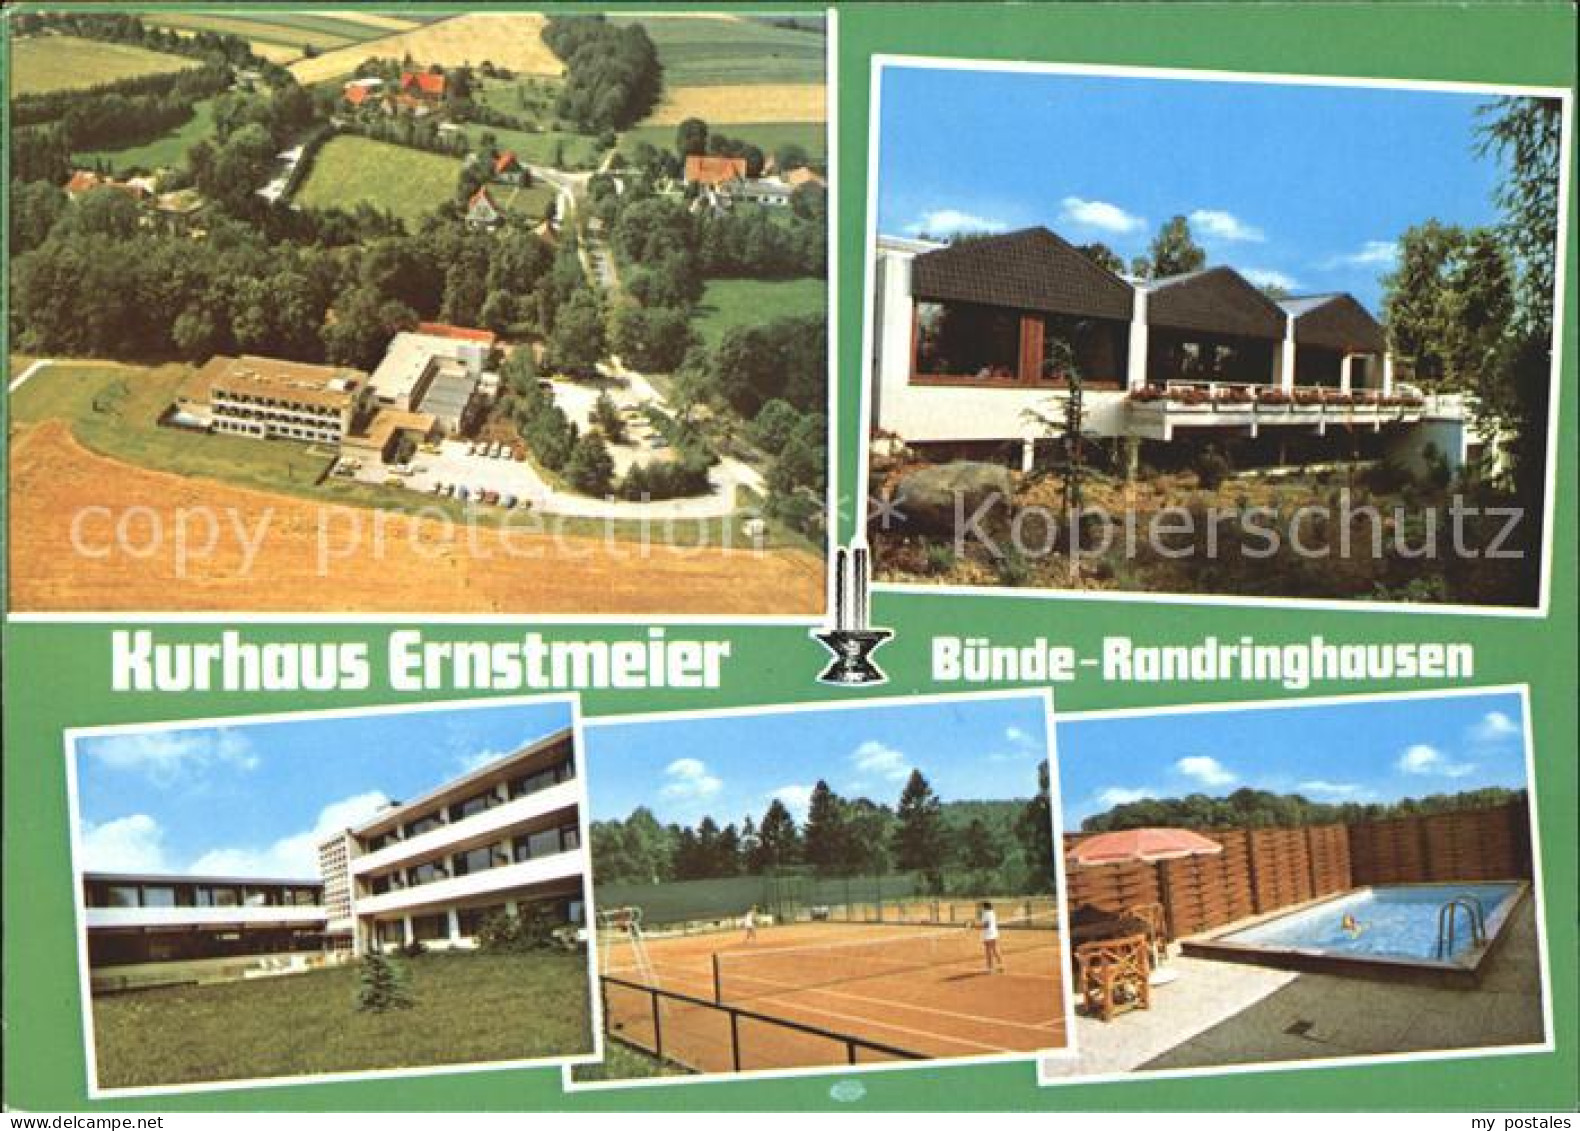 71993265 Randringhausen Bad Buende Kurhaus Ernstmeier Randringhausen Bad - Buende